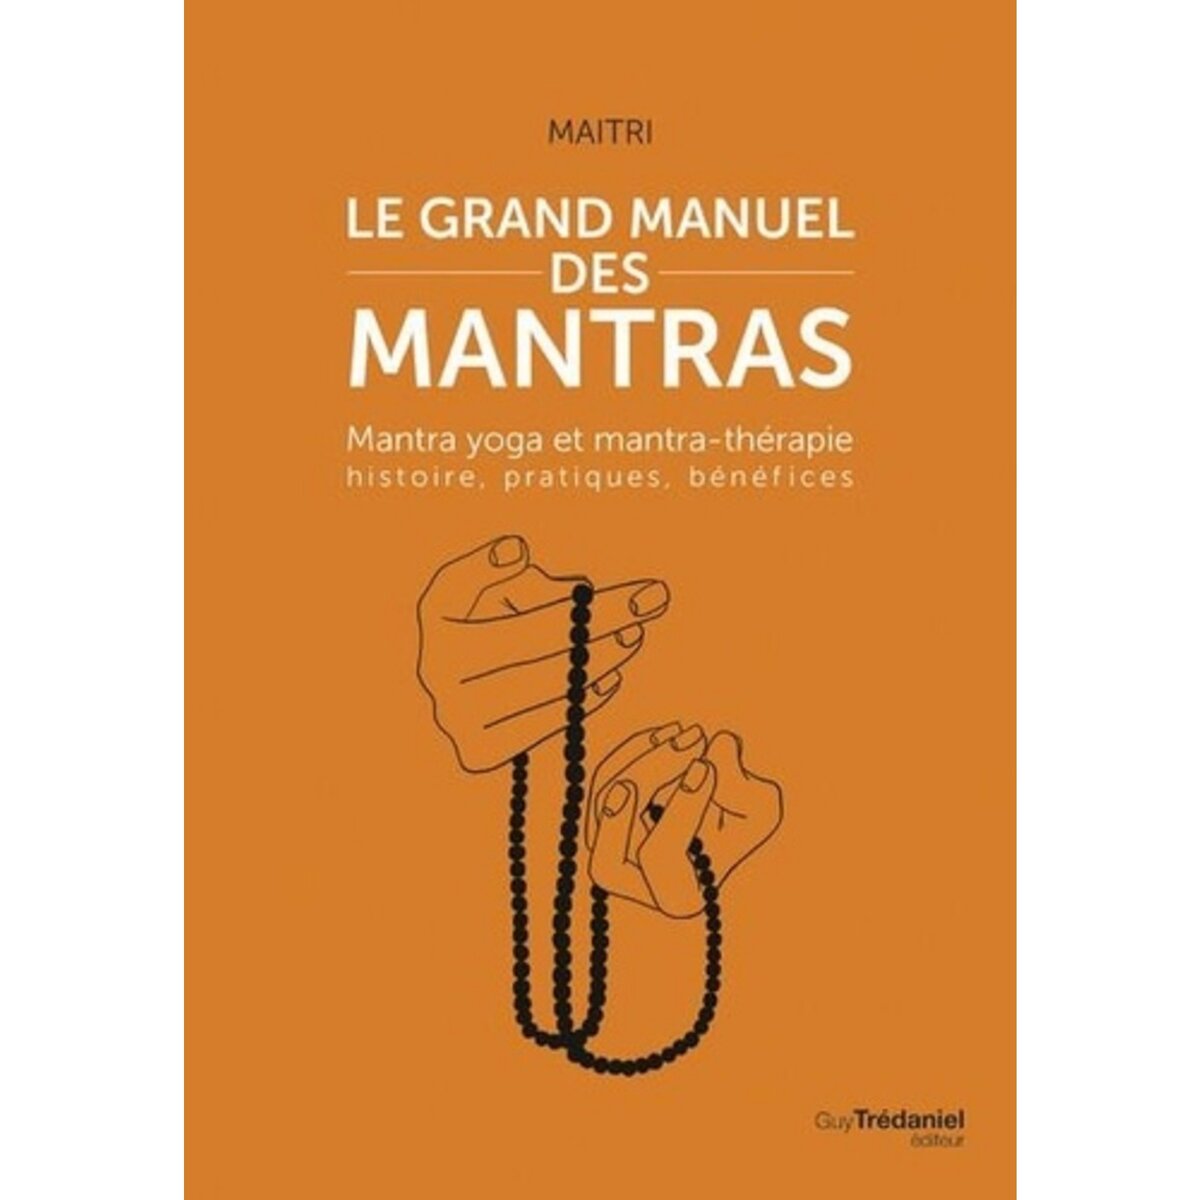  LE GRAND MANUEL DES MANTRAS. MANTRA YOGA ET MANTRATHERAPIE : HISTOIRE, PRATIQUES, BENEFICES, Maitri